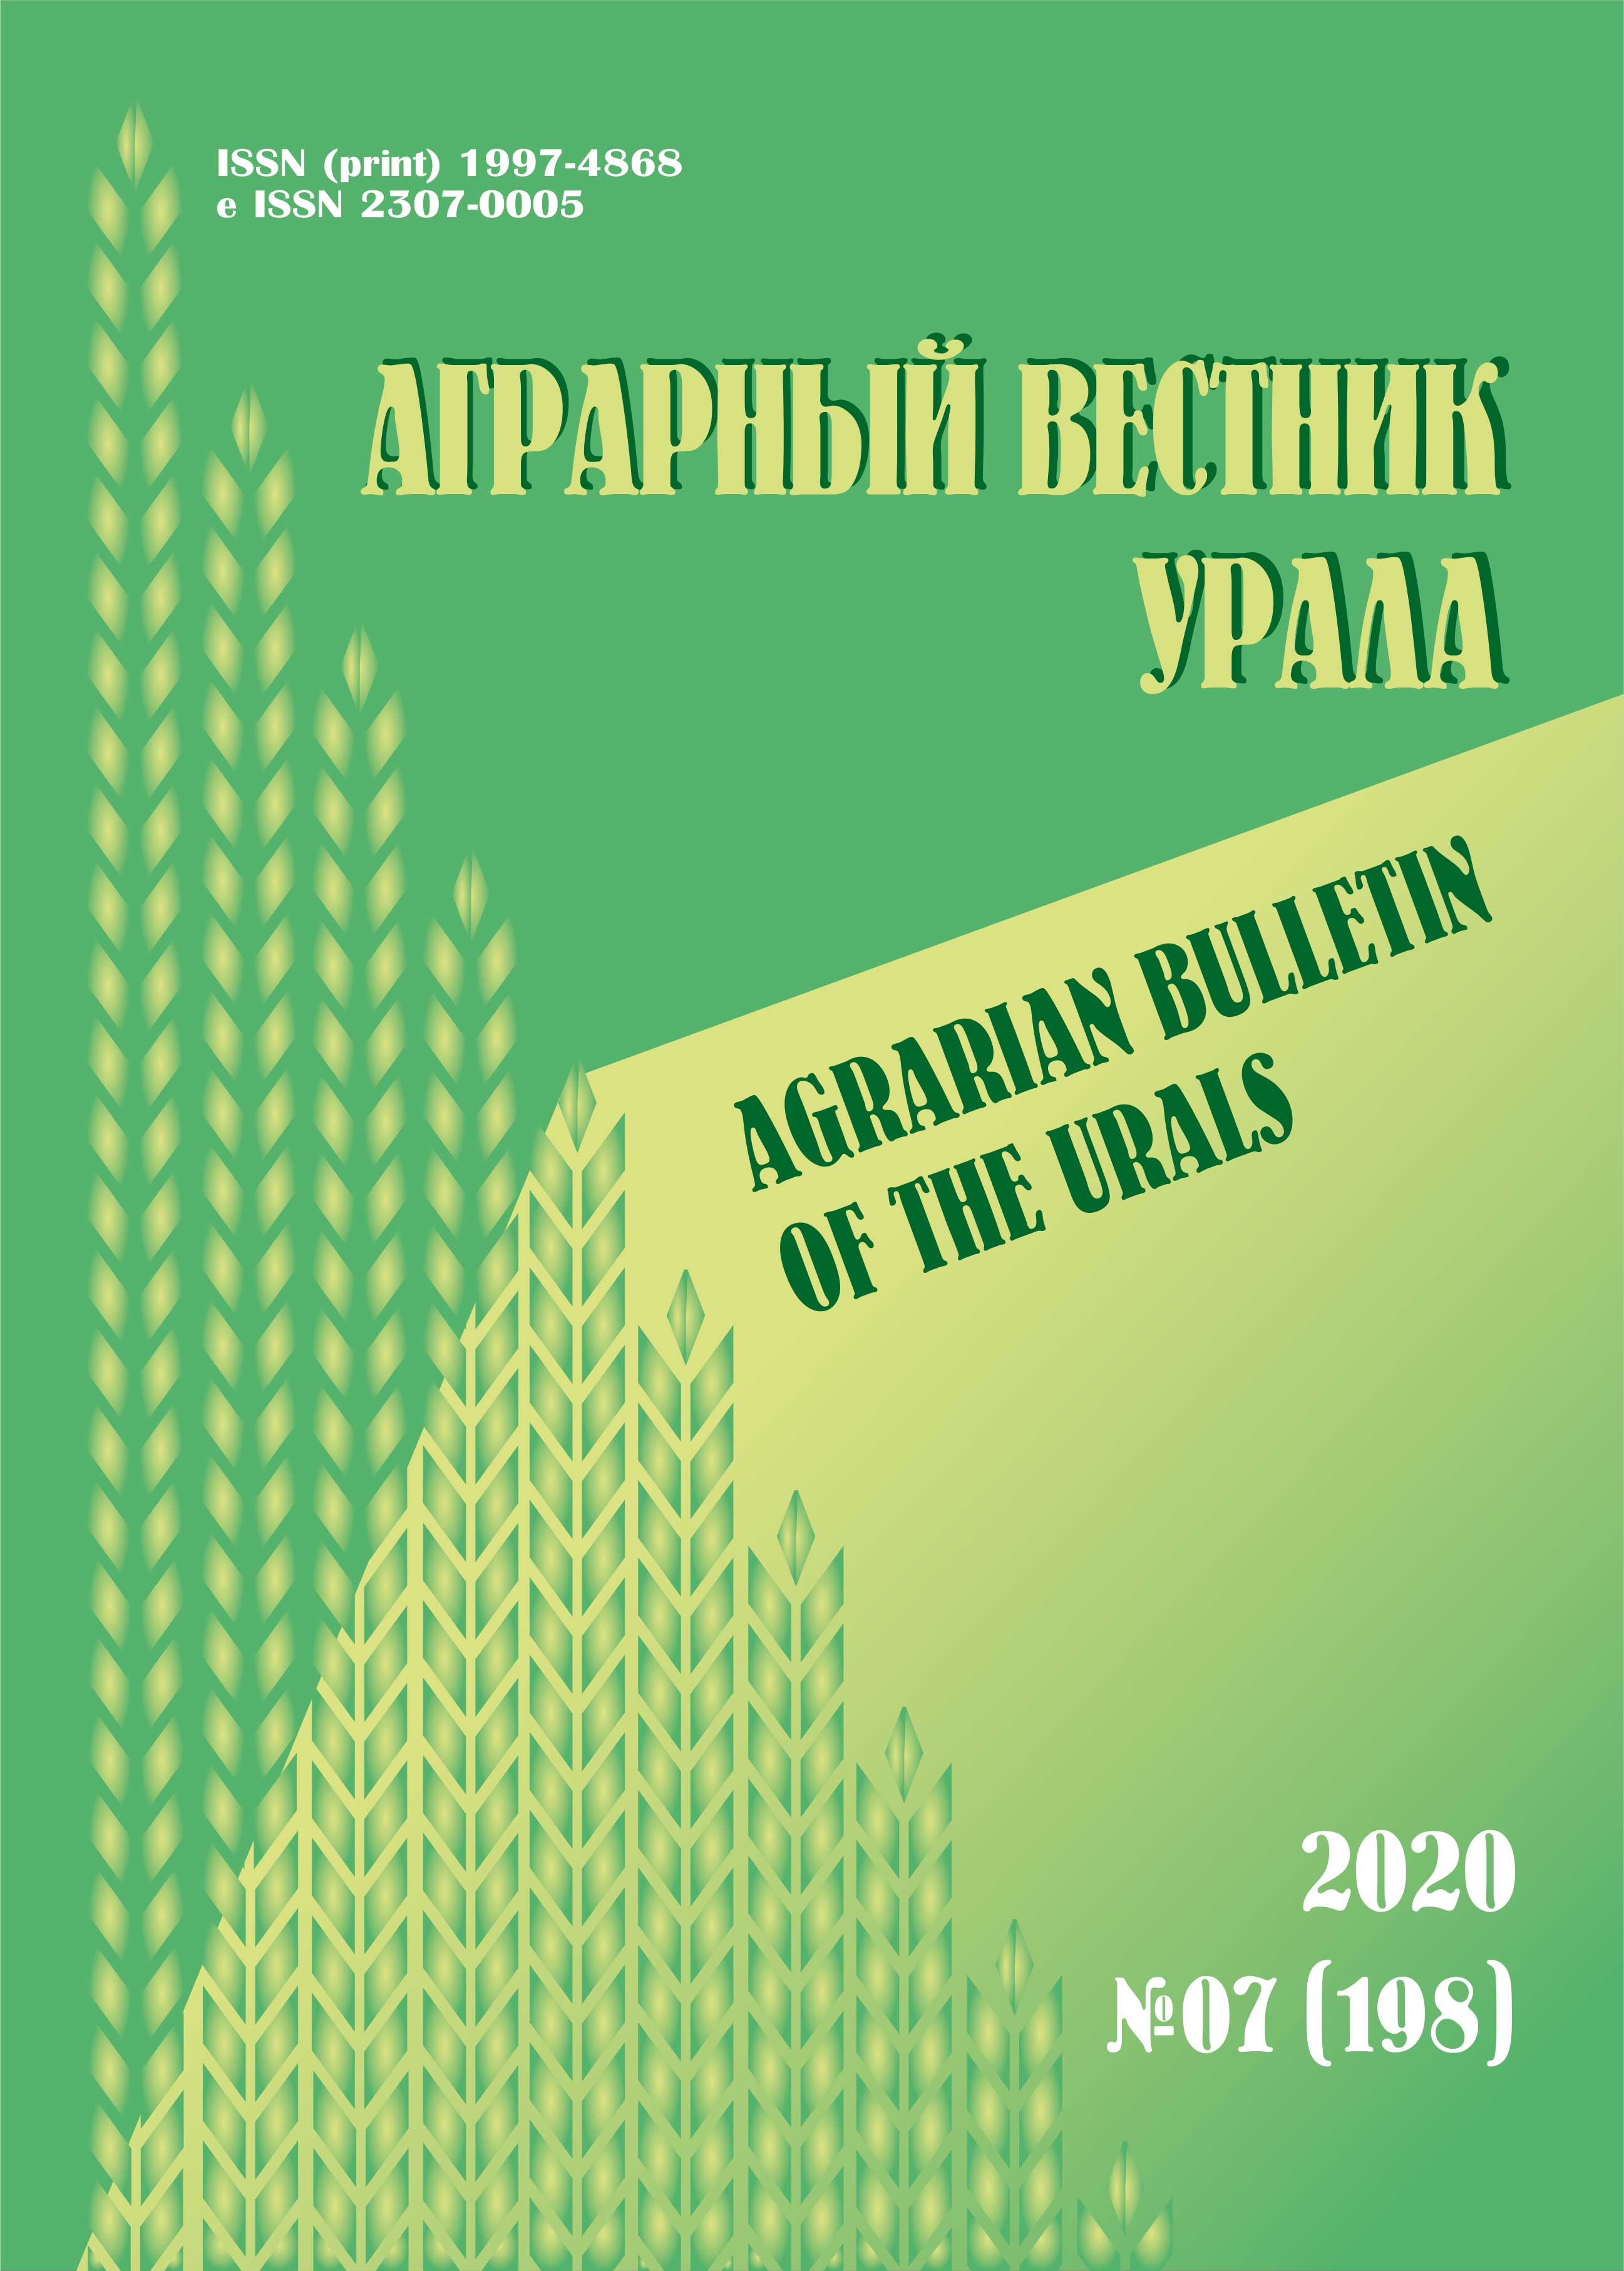             Биологическая продуктивность ультраранних гибридов кукурузы в различных почвенно-климатических зонах Уральского региона
    